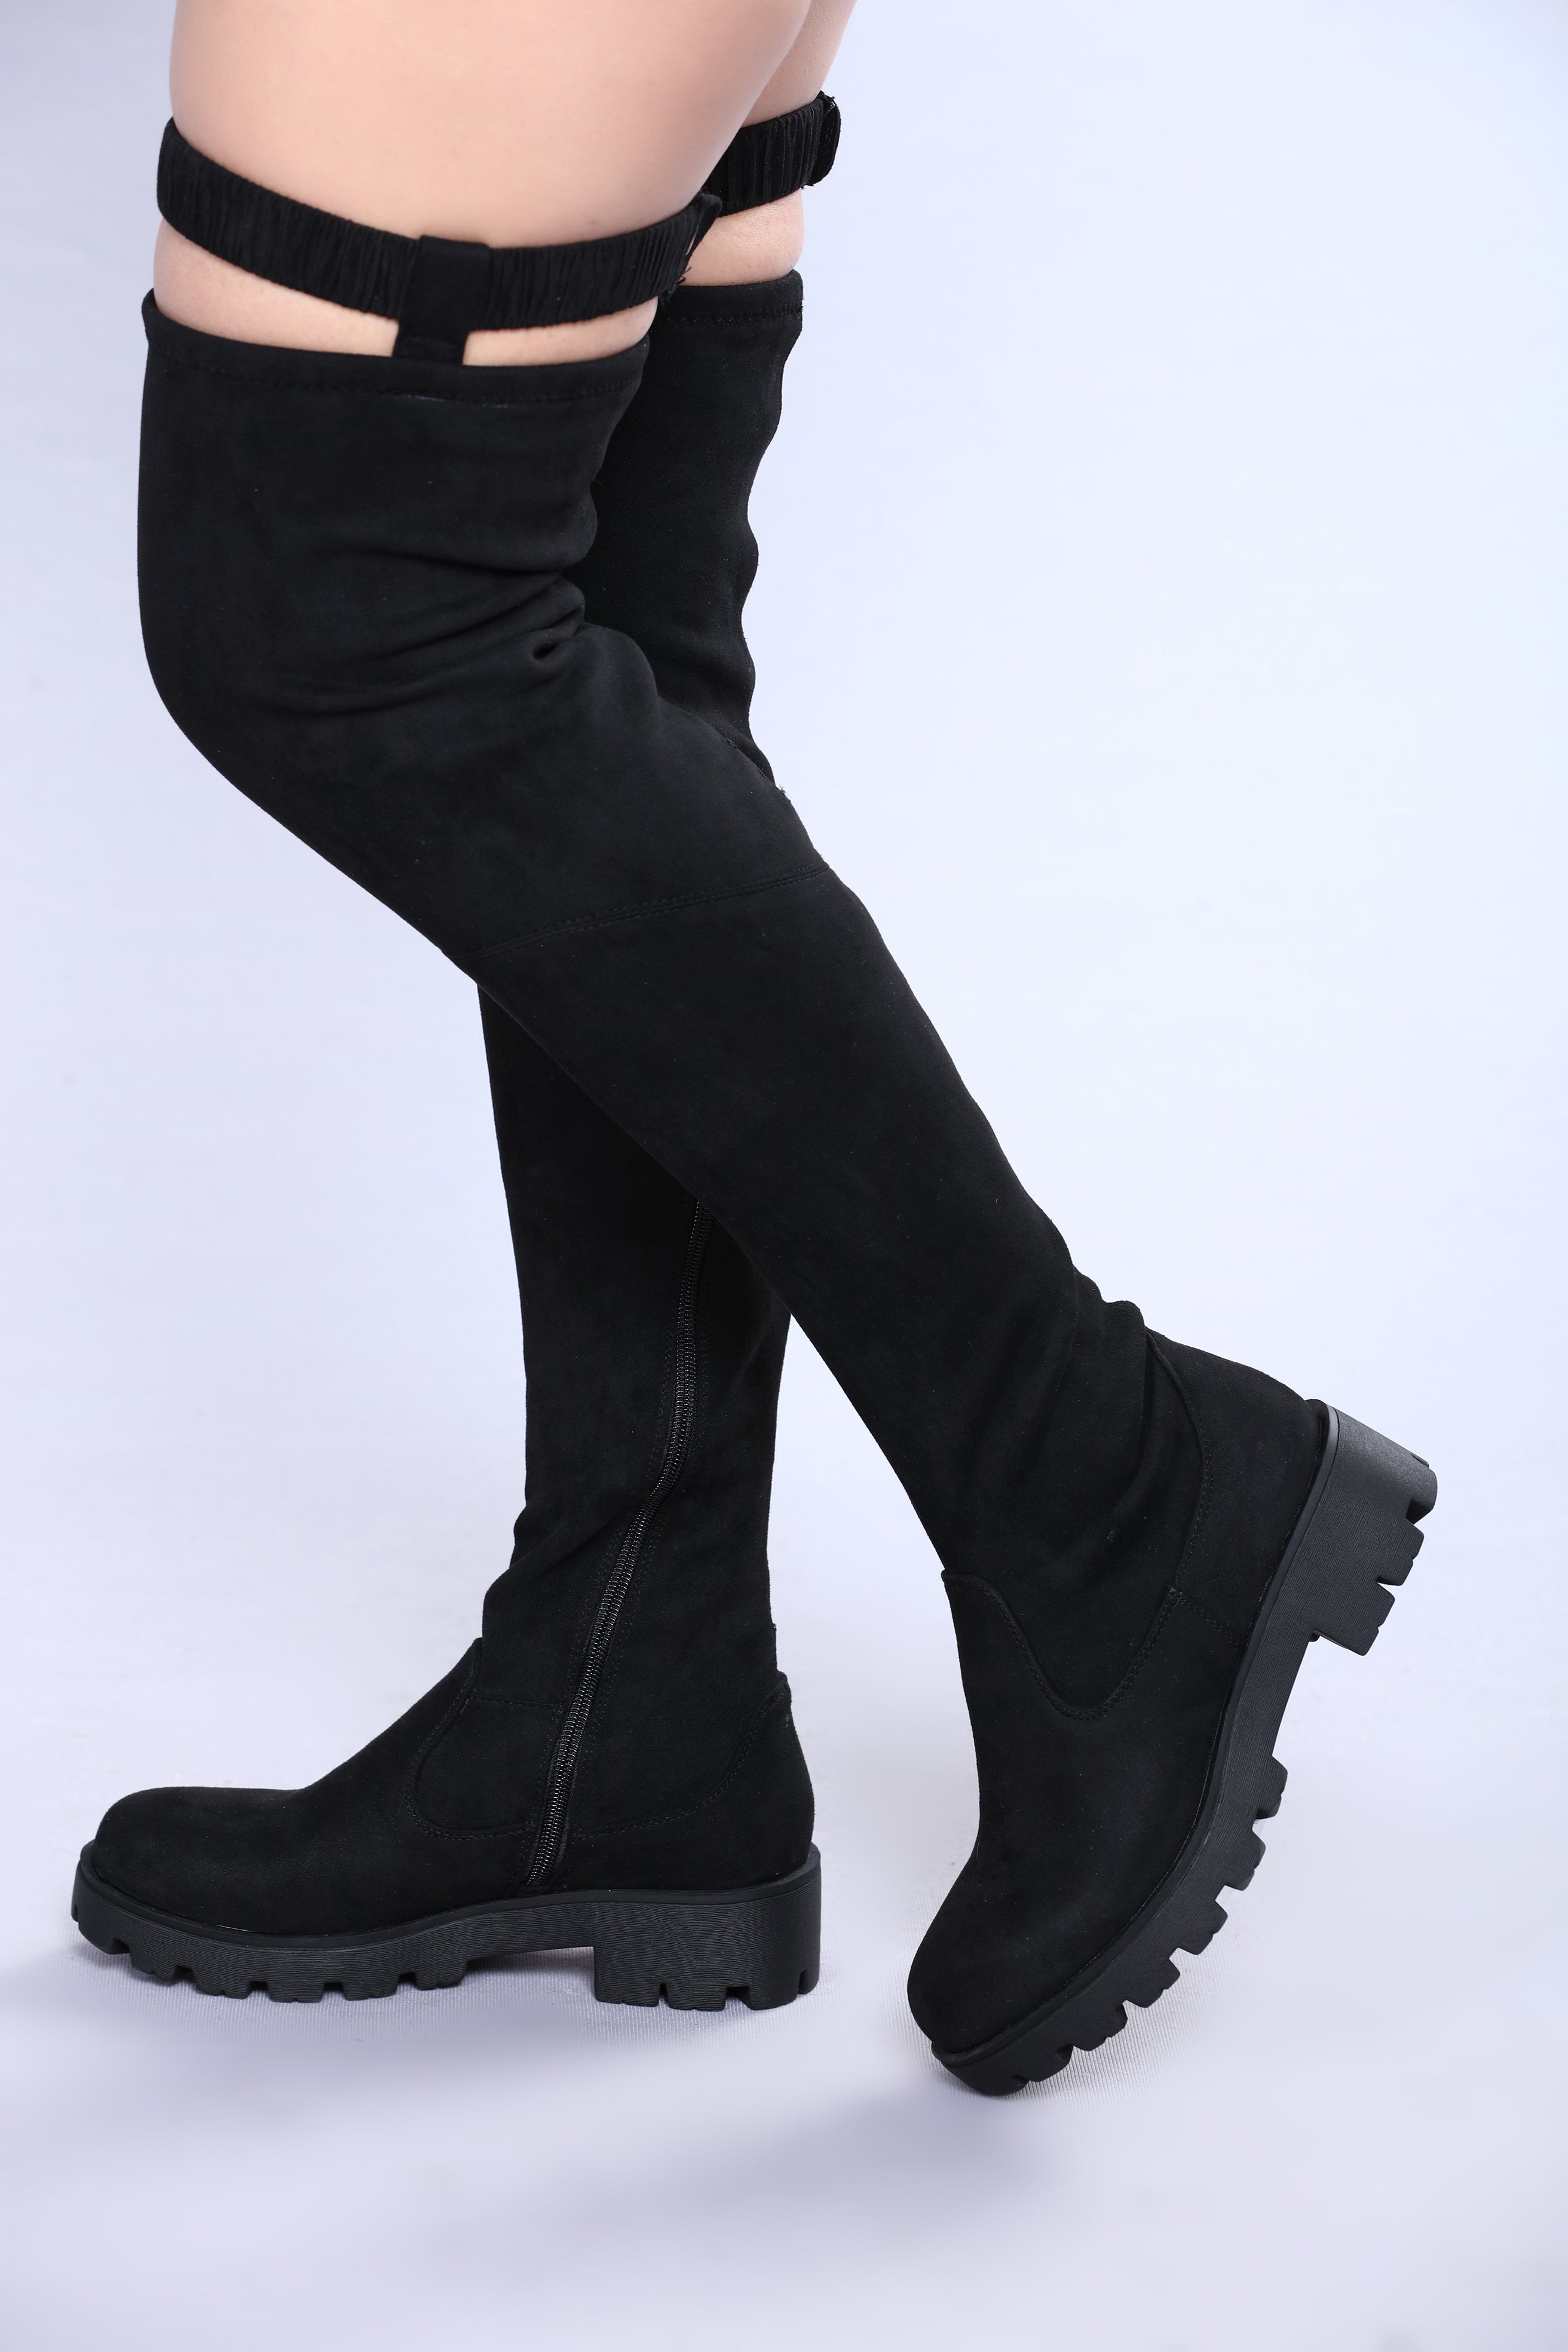 fashion nova high knee boots